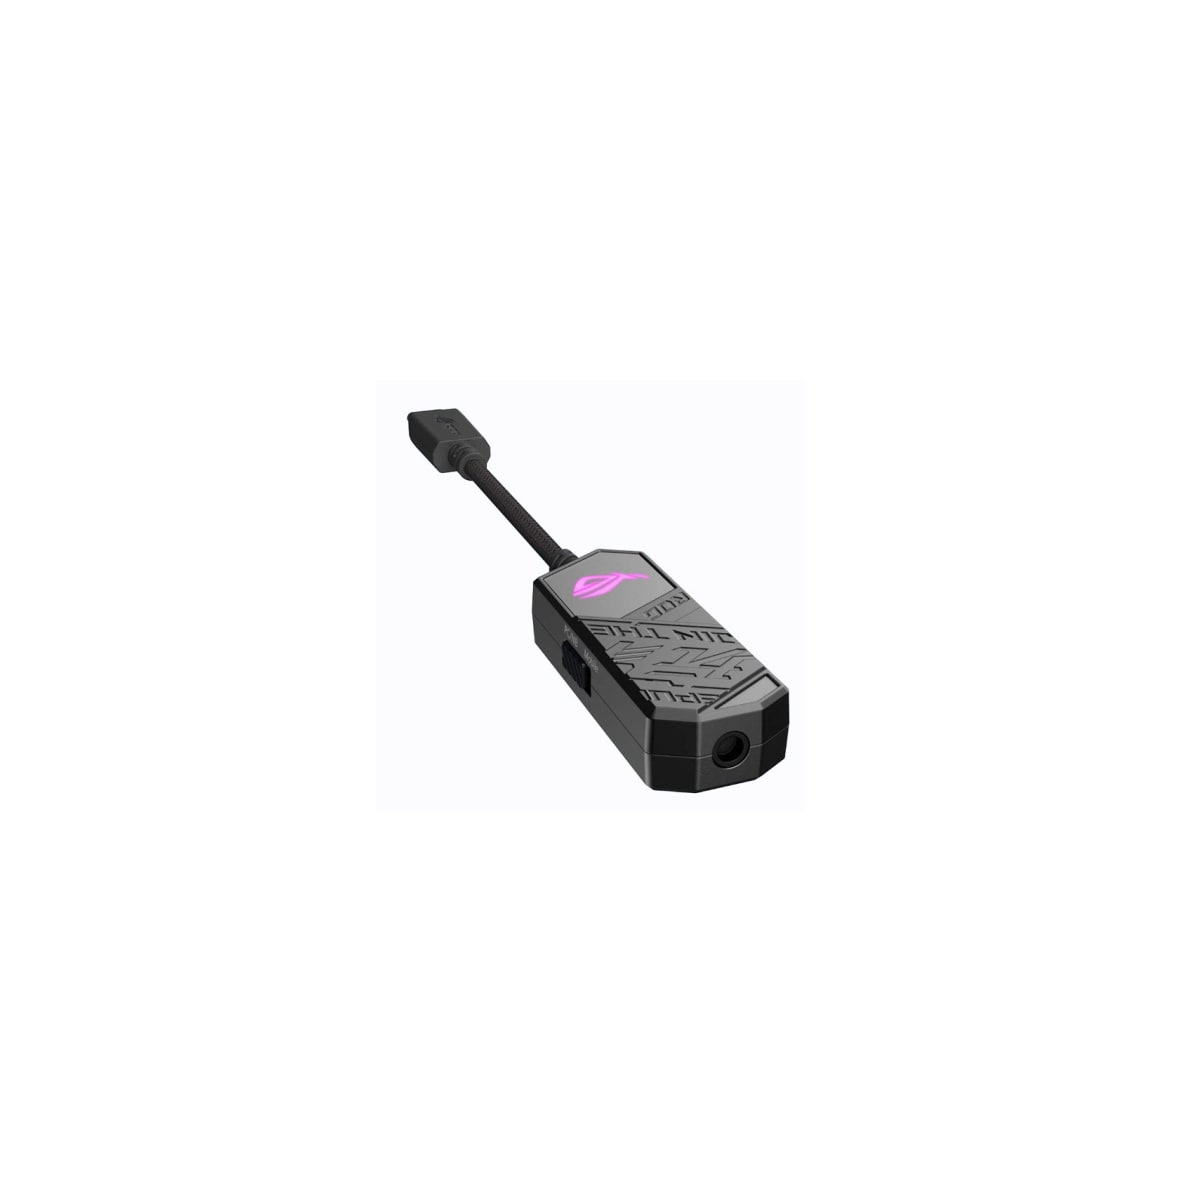 3,5mm auf ROG ASUS Black USB-C USB Gaming-DAC, Clavis Hub,